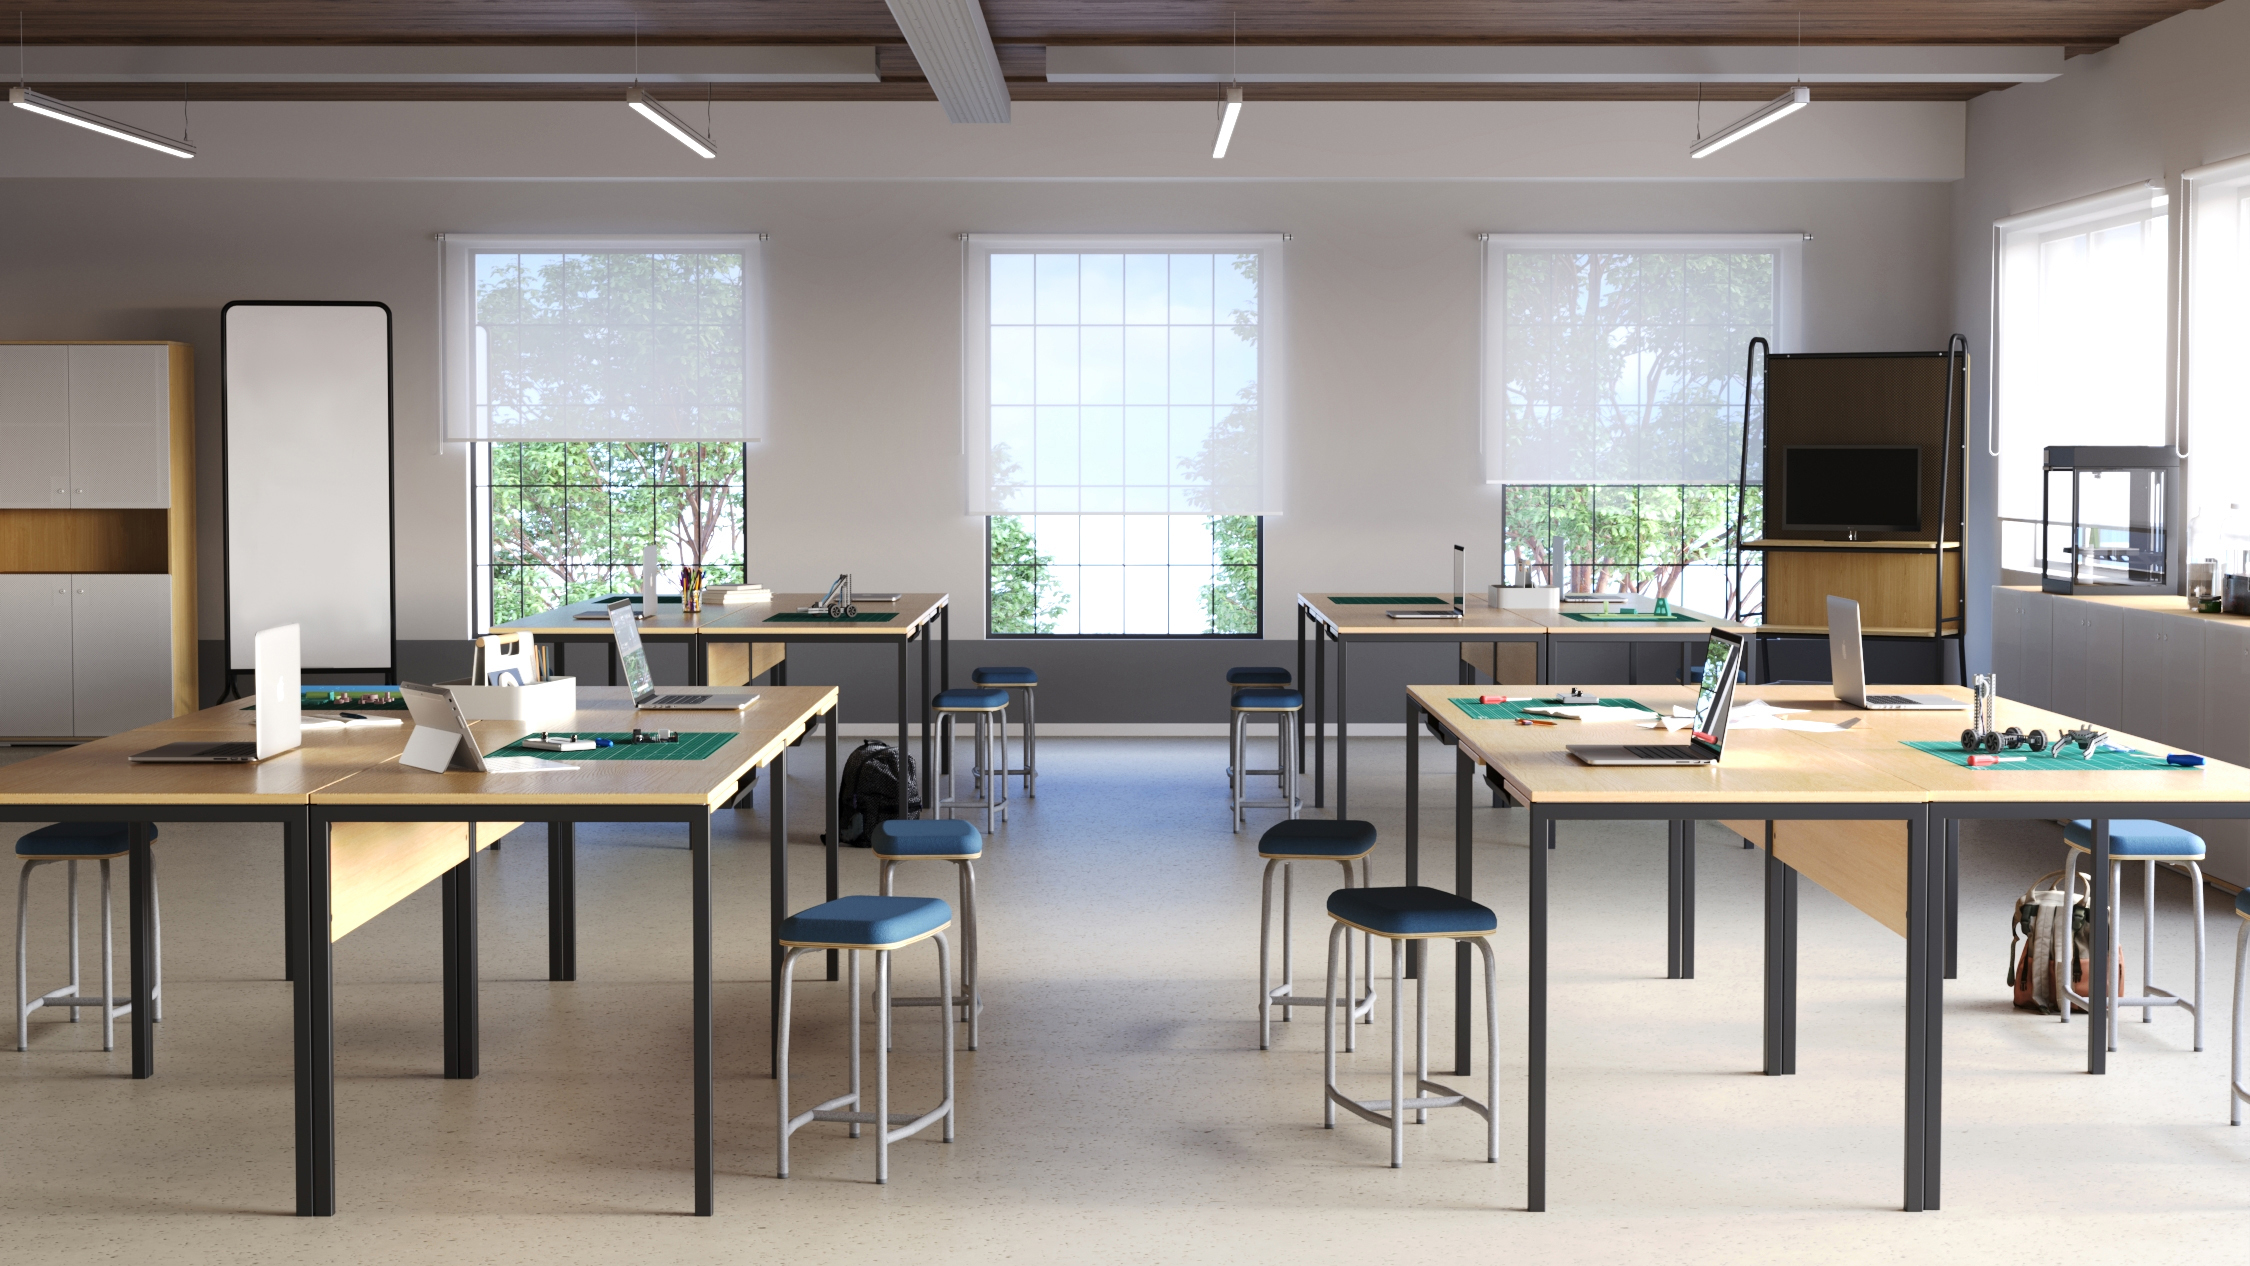 Sala de aula com mesas e bancos individuais, ao fundo três janelas grandes . Sobre as mesas equipamentos e ferramentas par construção de protótipos eletrônicos.